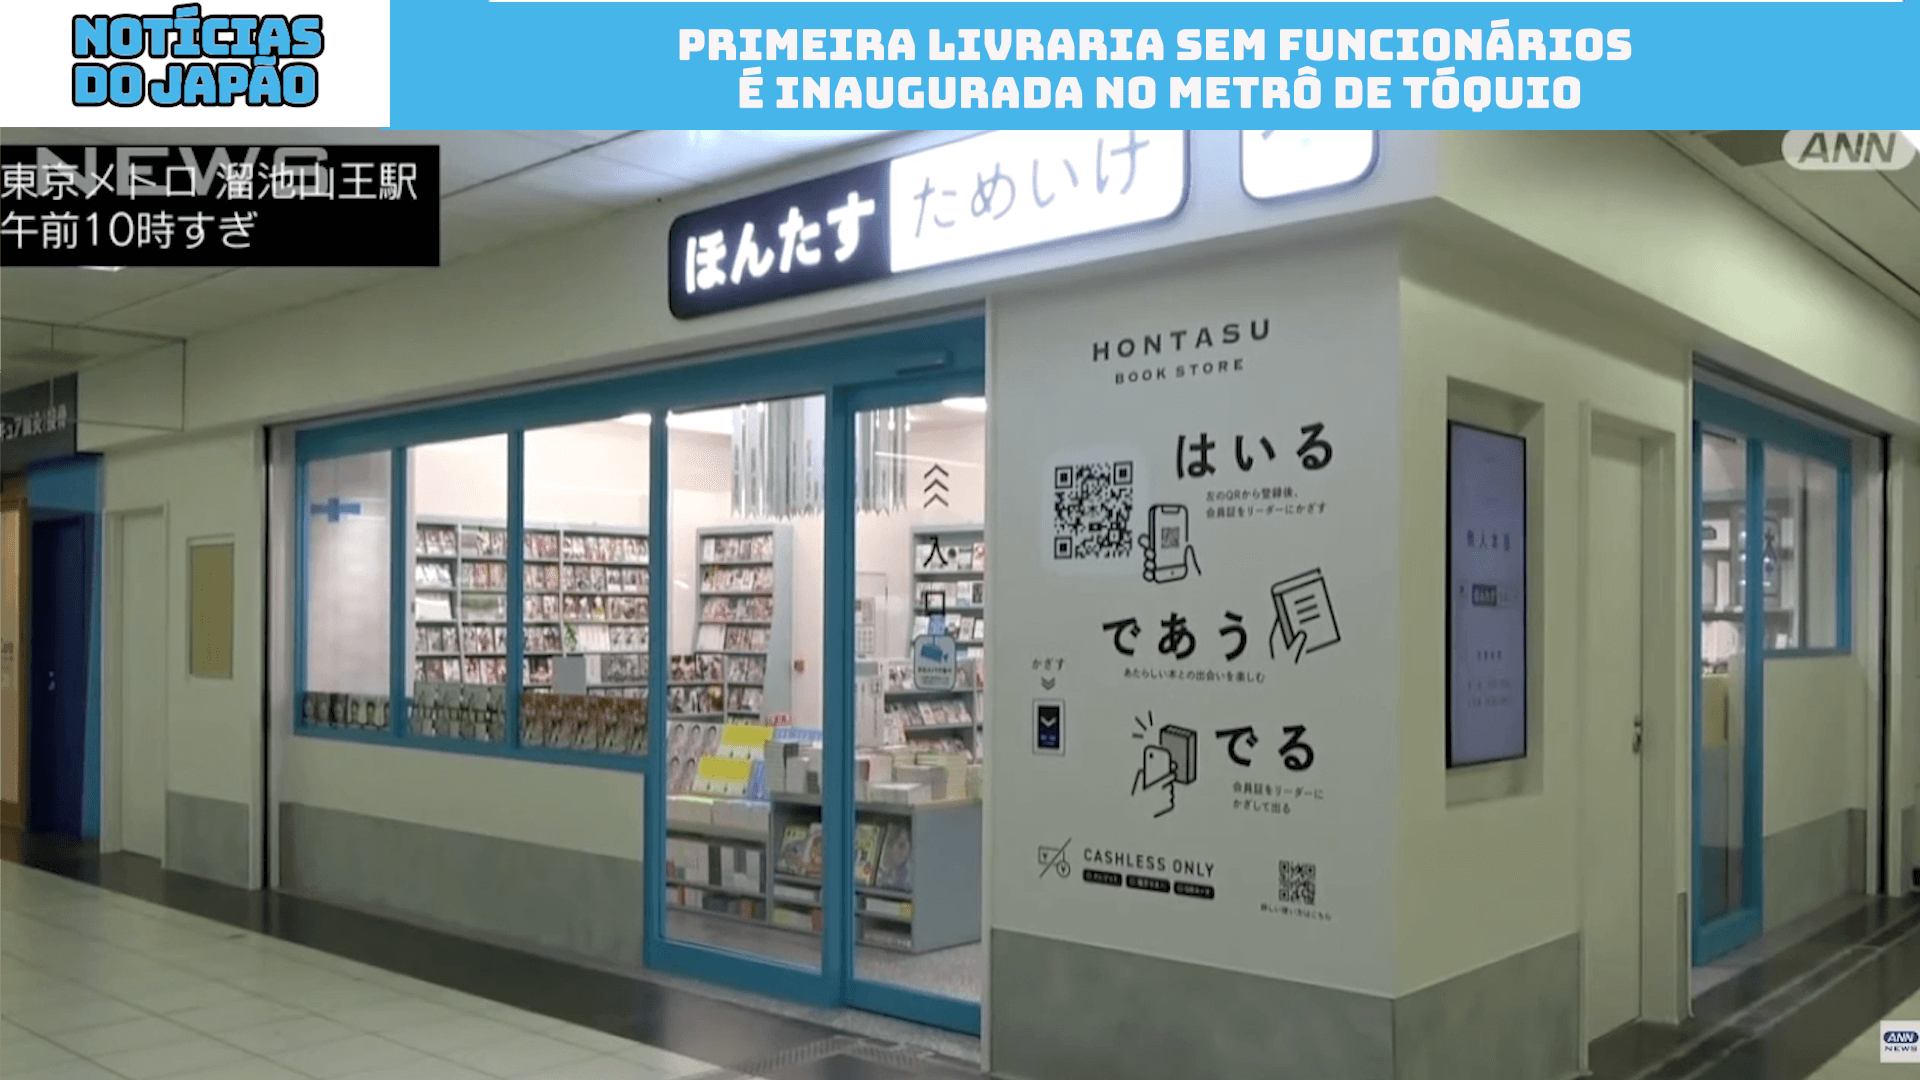 Primeira livraria sem funcionários é inaugurada no metrô de Tóquio 